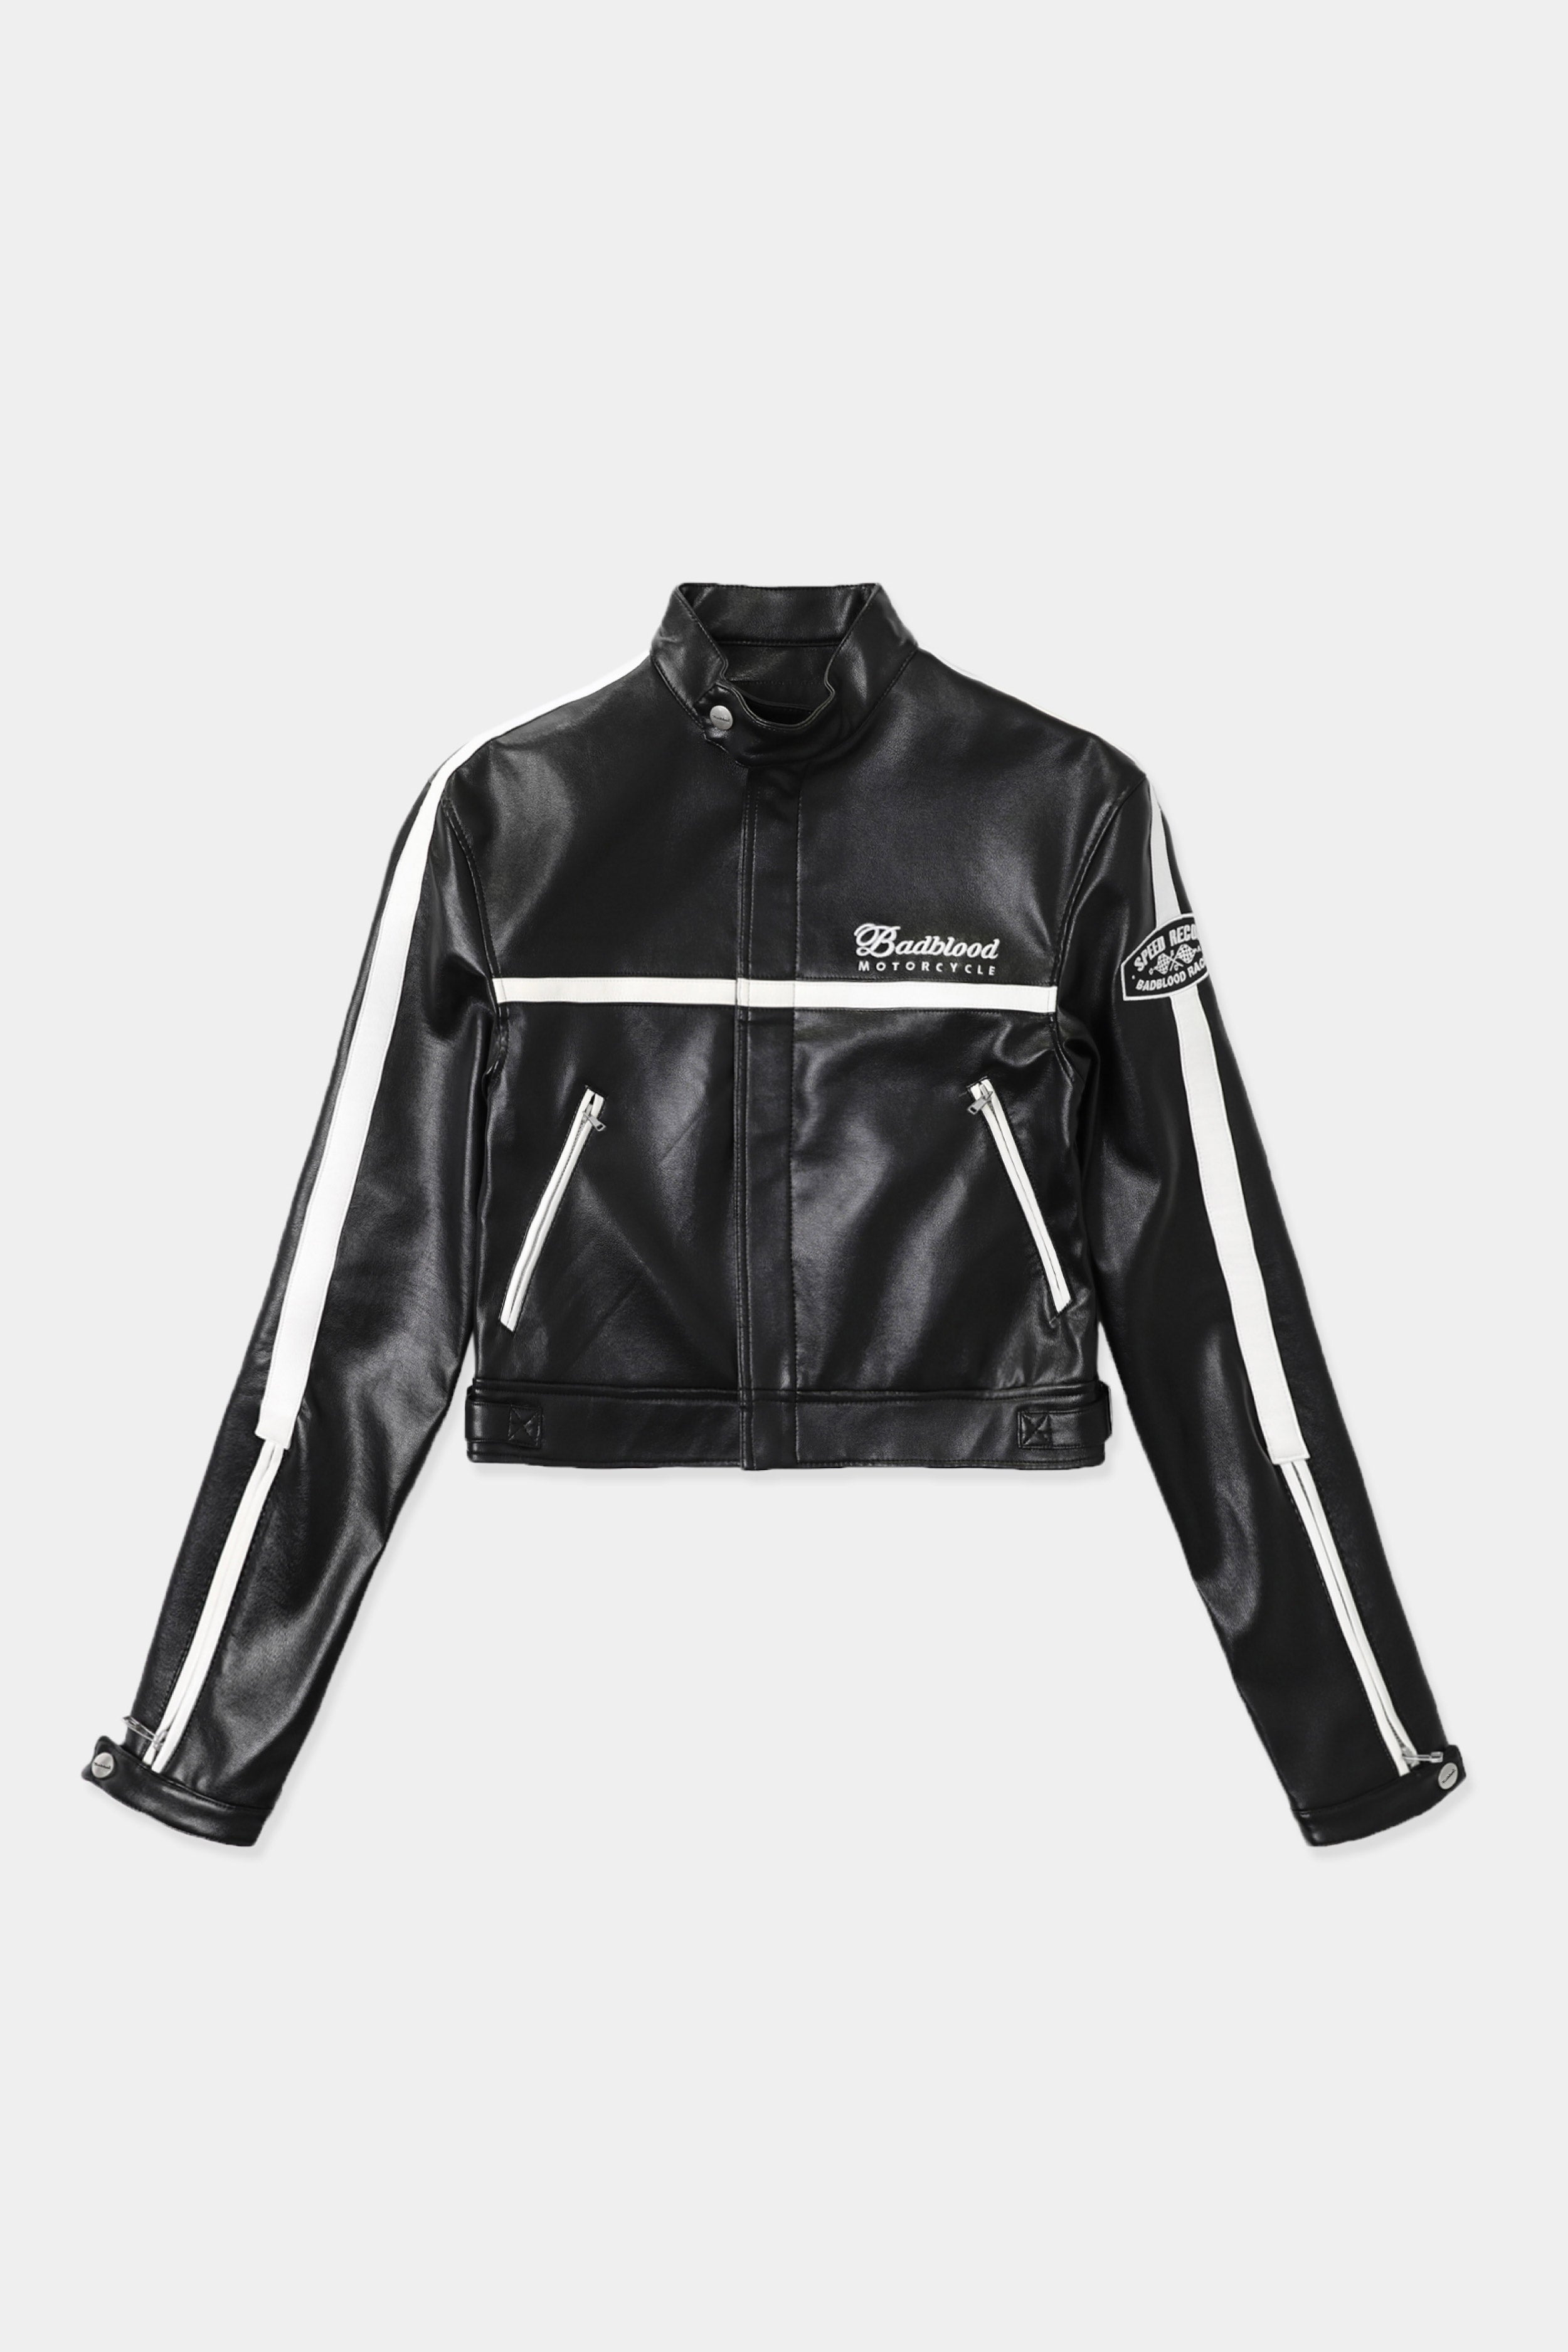 Badblood Eco Leather Racing Jacket Black